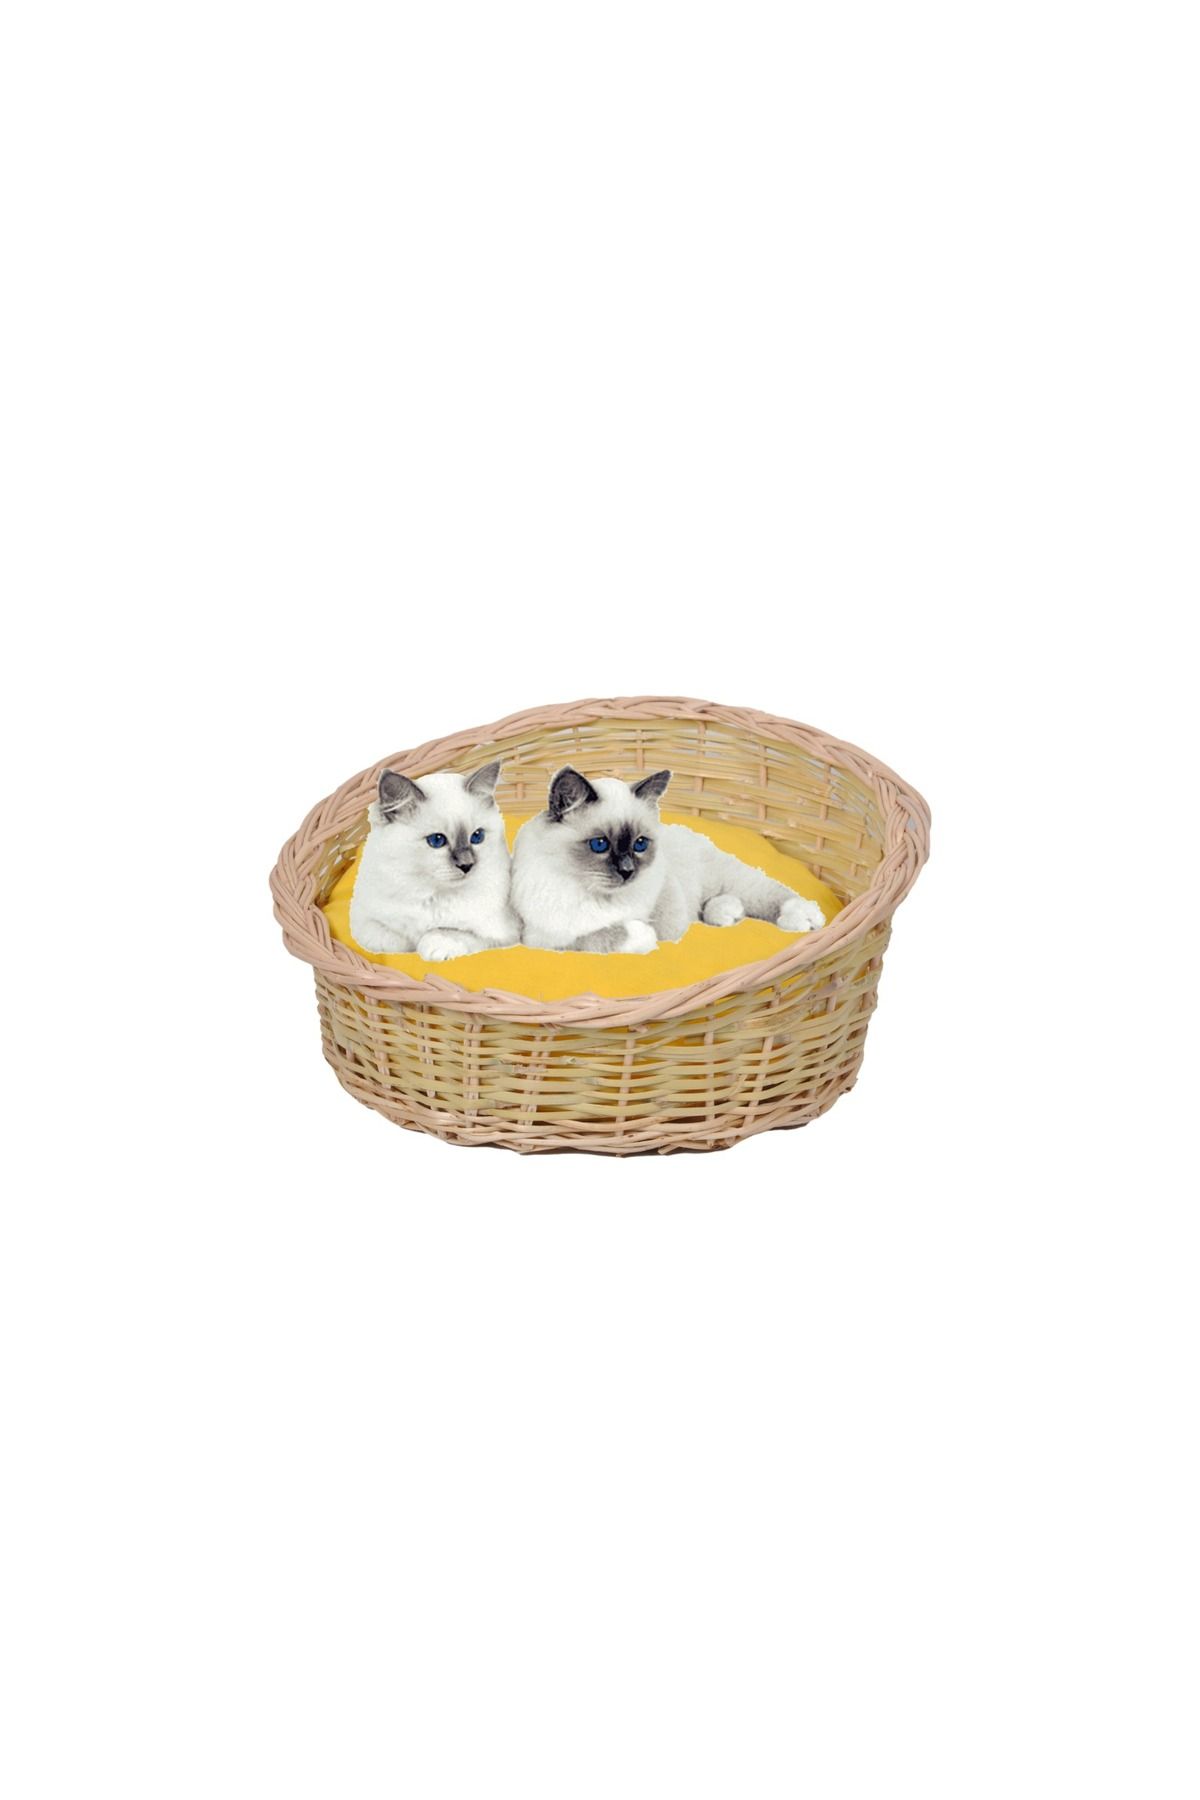 tunalar Hasır Kedi Köpek Yatağı Sarı Minder Hediyeli Renkli El Yapımı Hasır 40 Cm